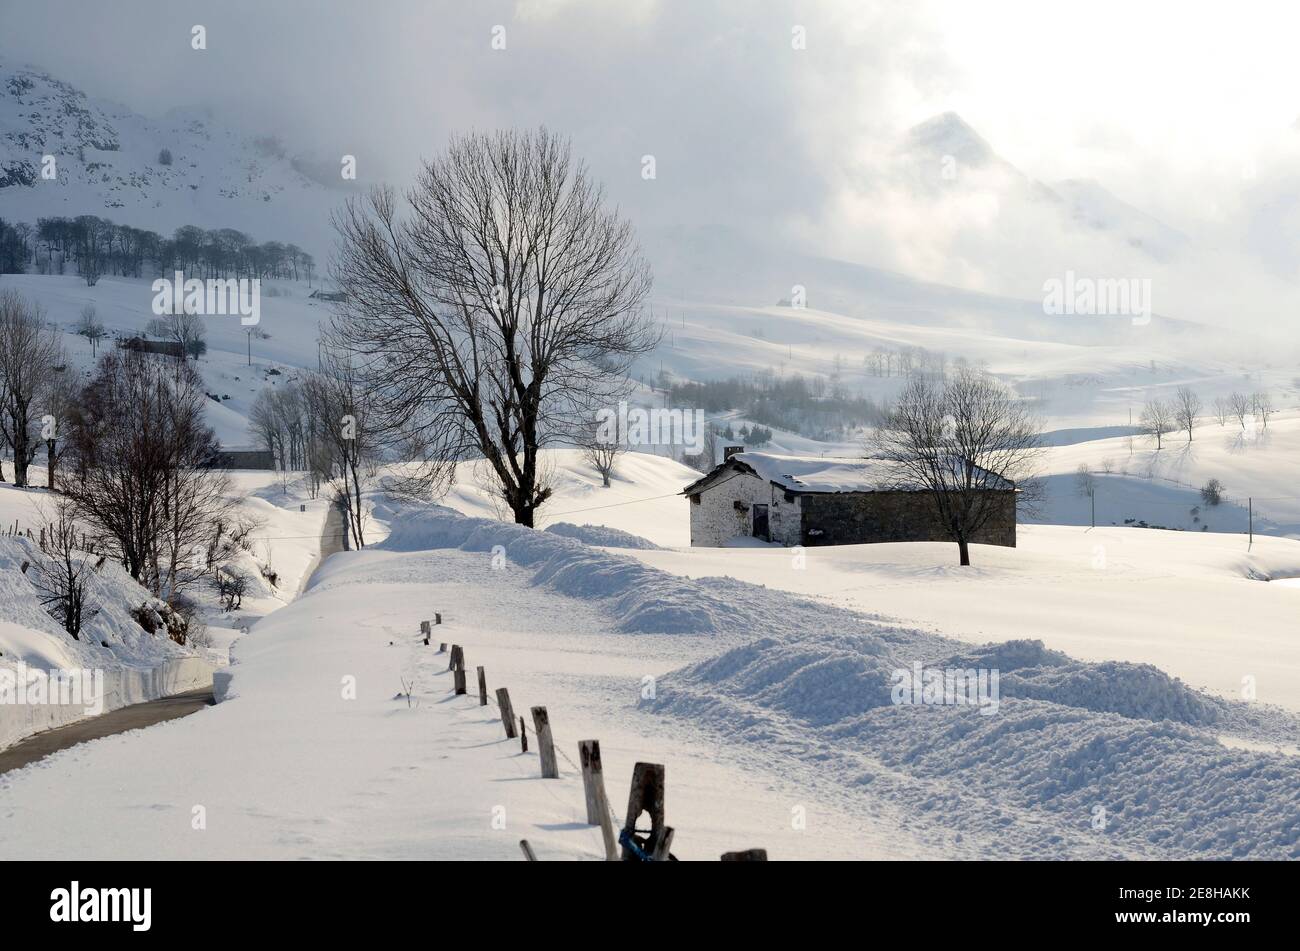 La neige couvre les prés et les huttes de berger dans la Valle del pas (Valles Pasiegos). Cantabrie, Espagne Banque D'Images